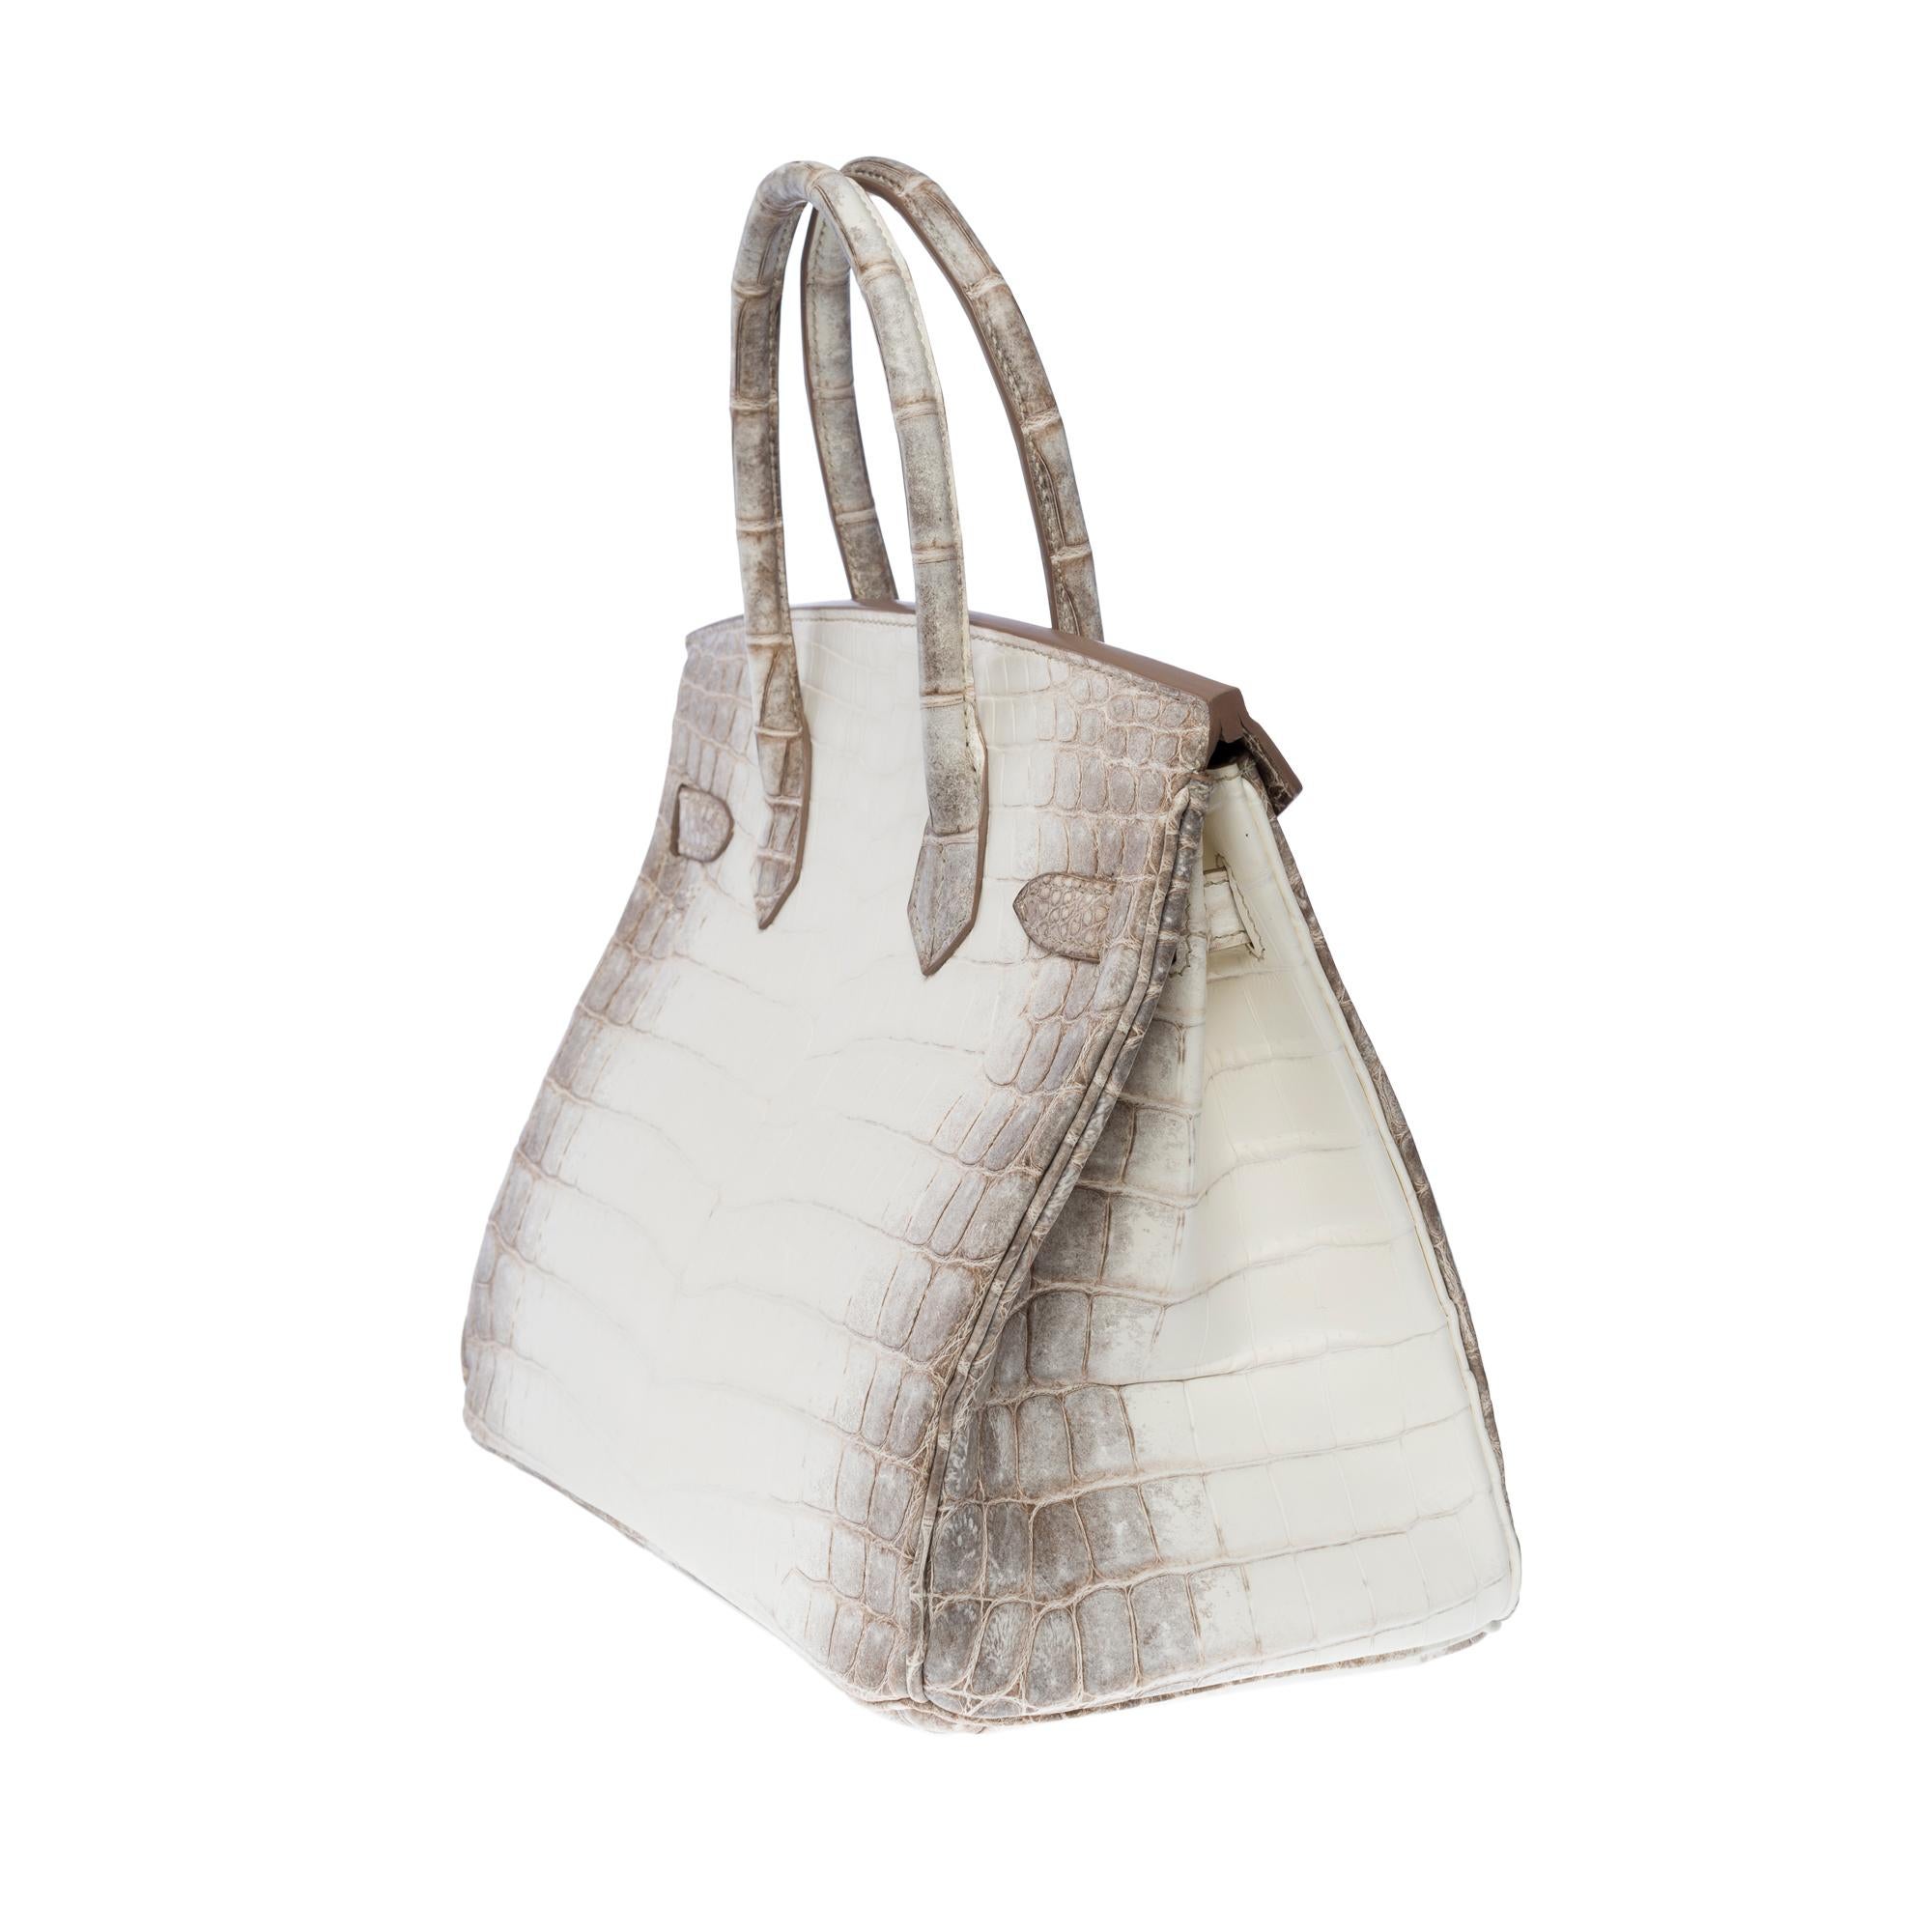 Seltene neue Hermès Birkin 30 Himalaya Handtasche in weißem Nilkrokodilleder, SHW 1